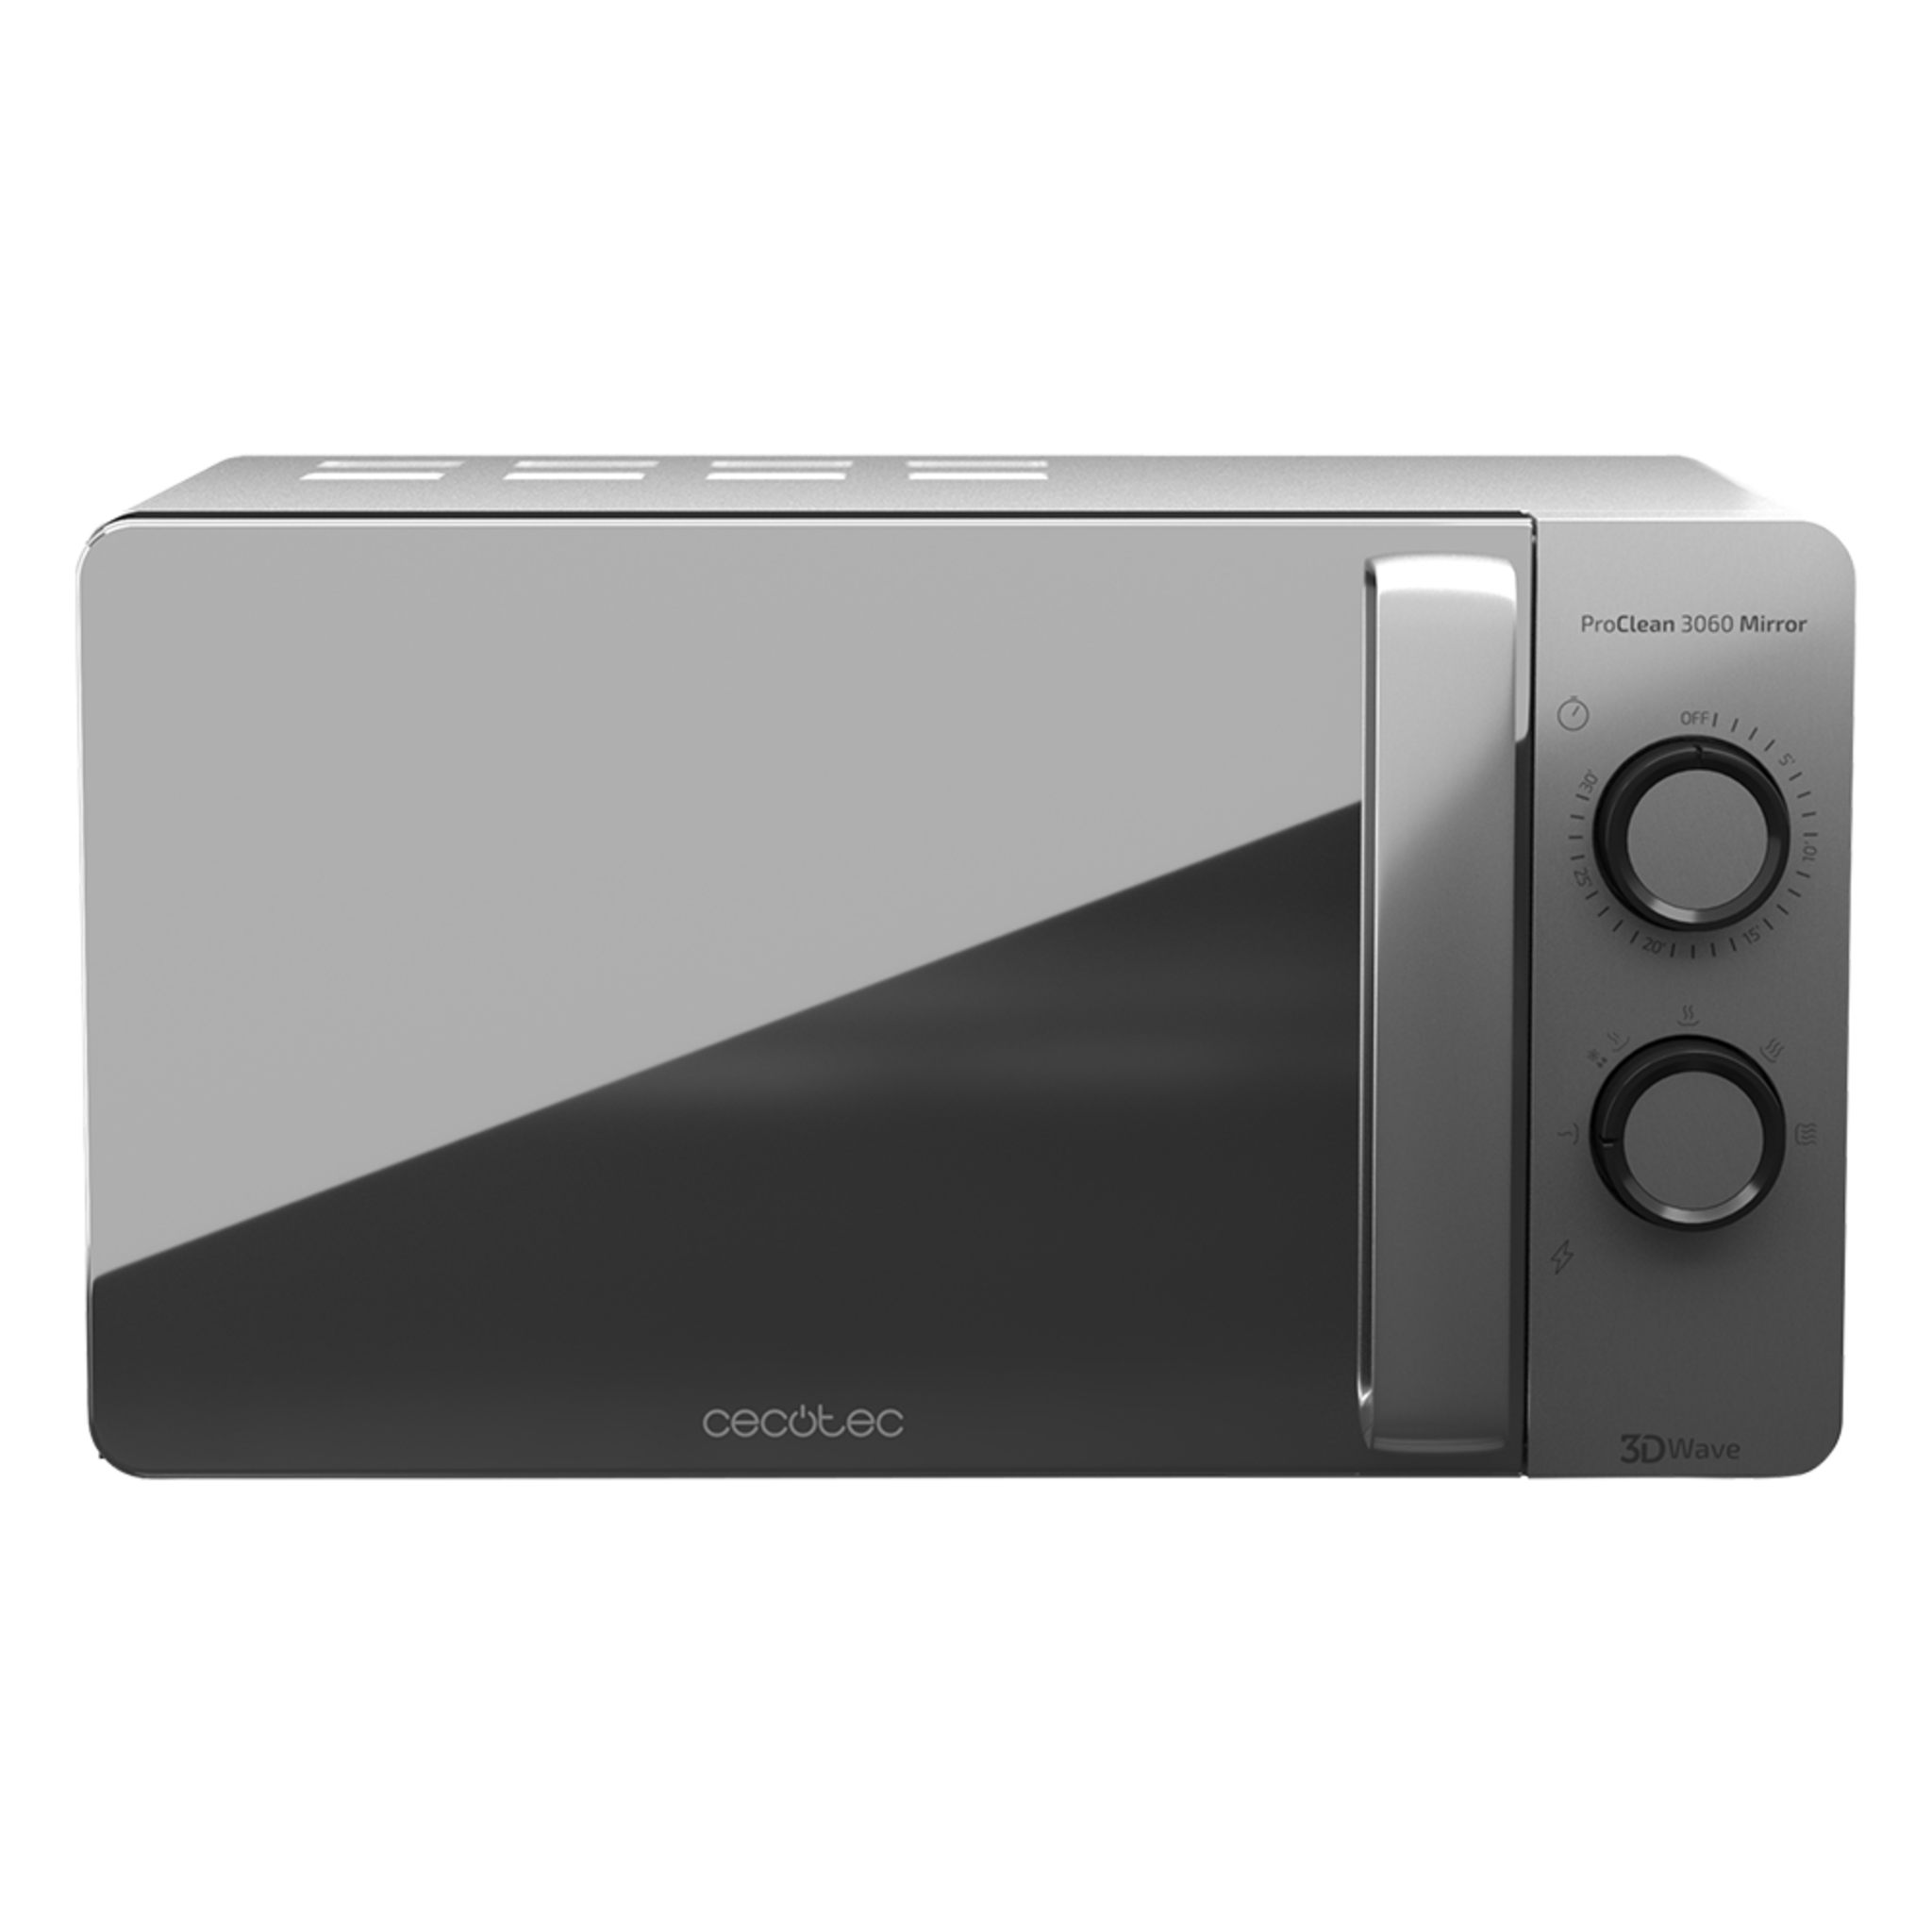 ProClean 3060 Mirror - Micro-ondes avec revêtement Ready2Clean pour un meilleur nettoyage, technologie 3DWave, 700 W, 20 L et argenté